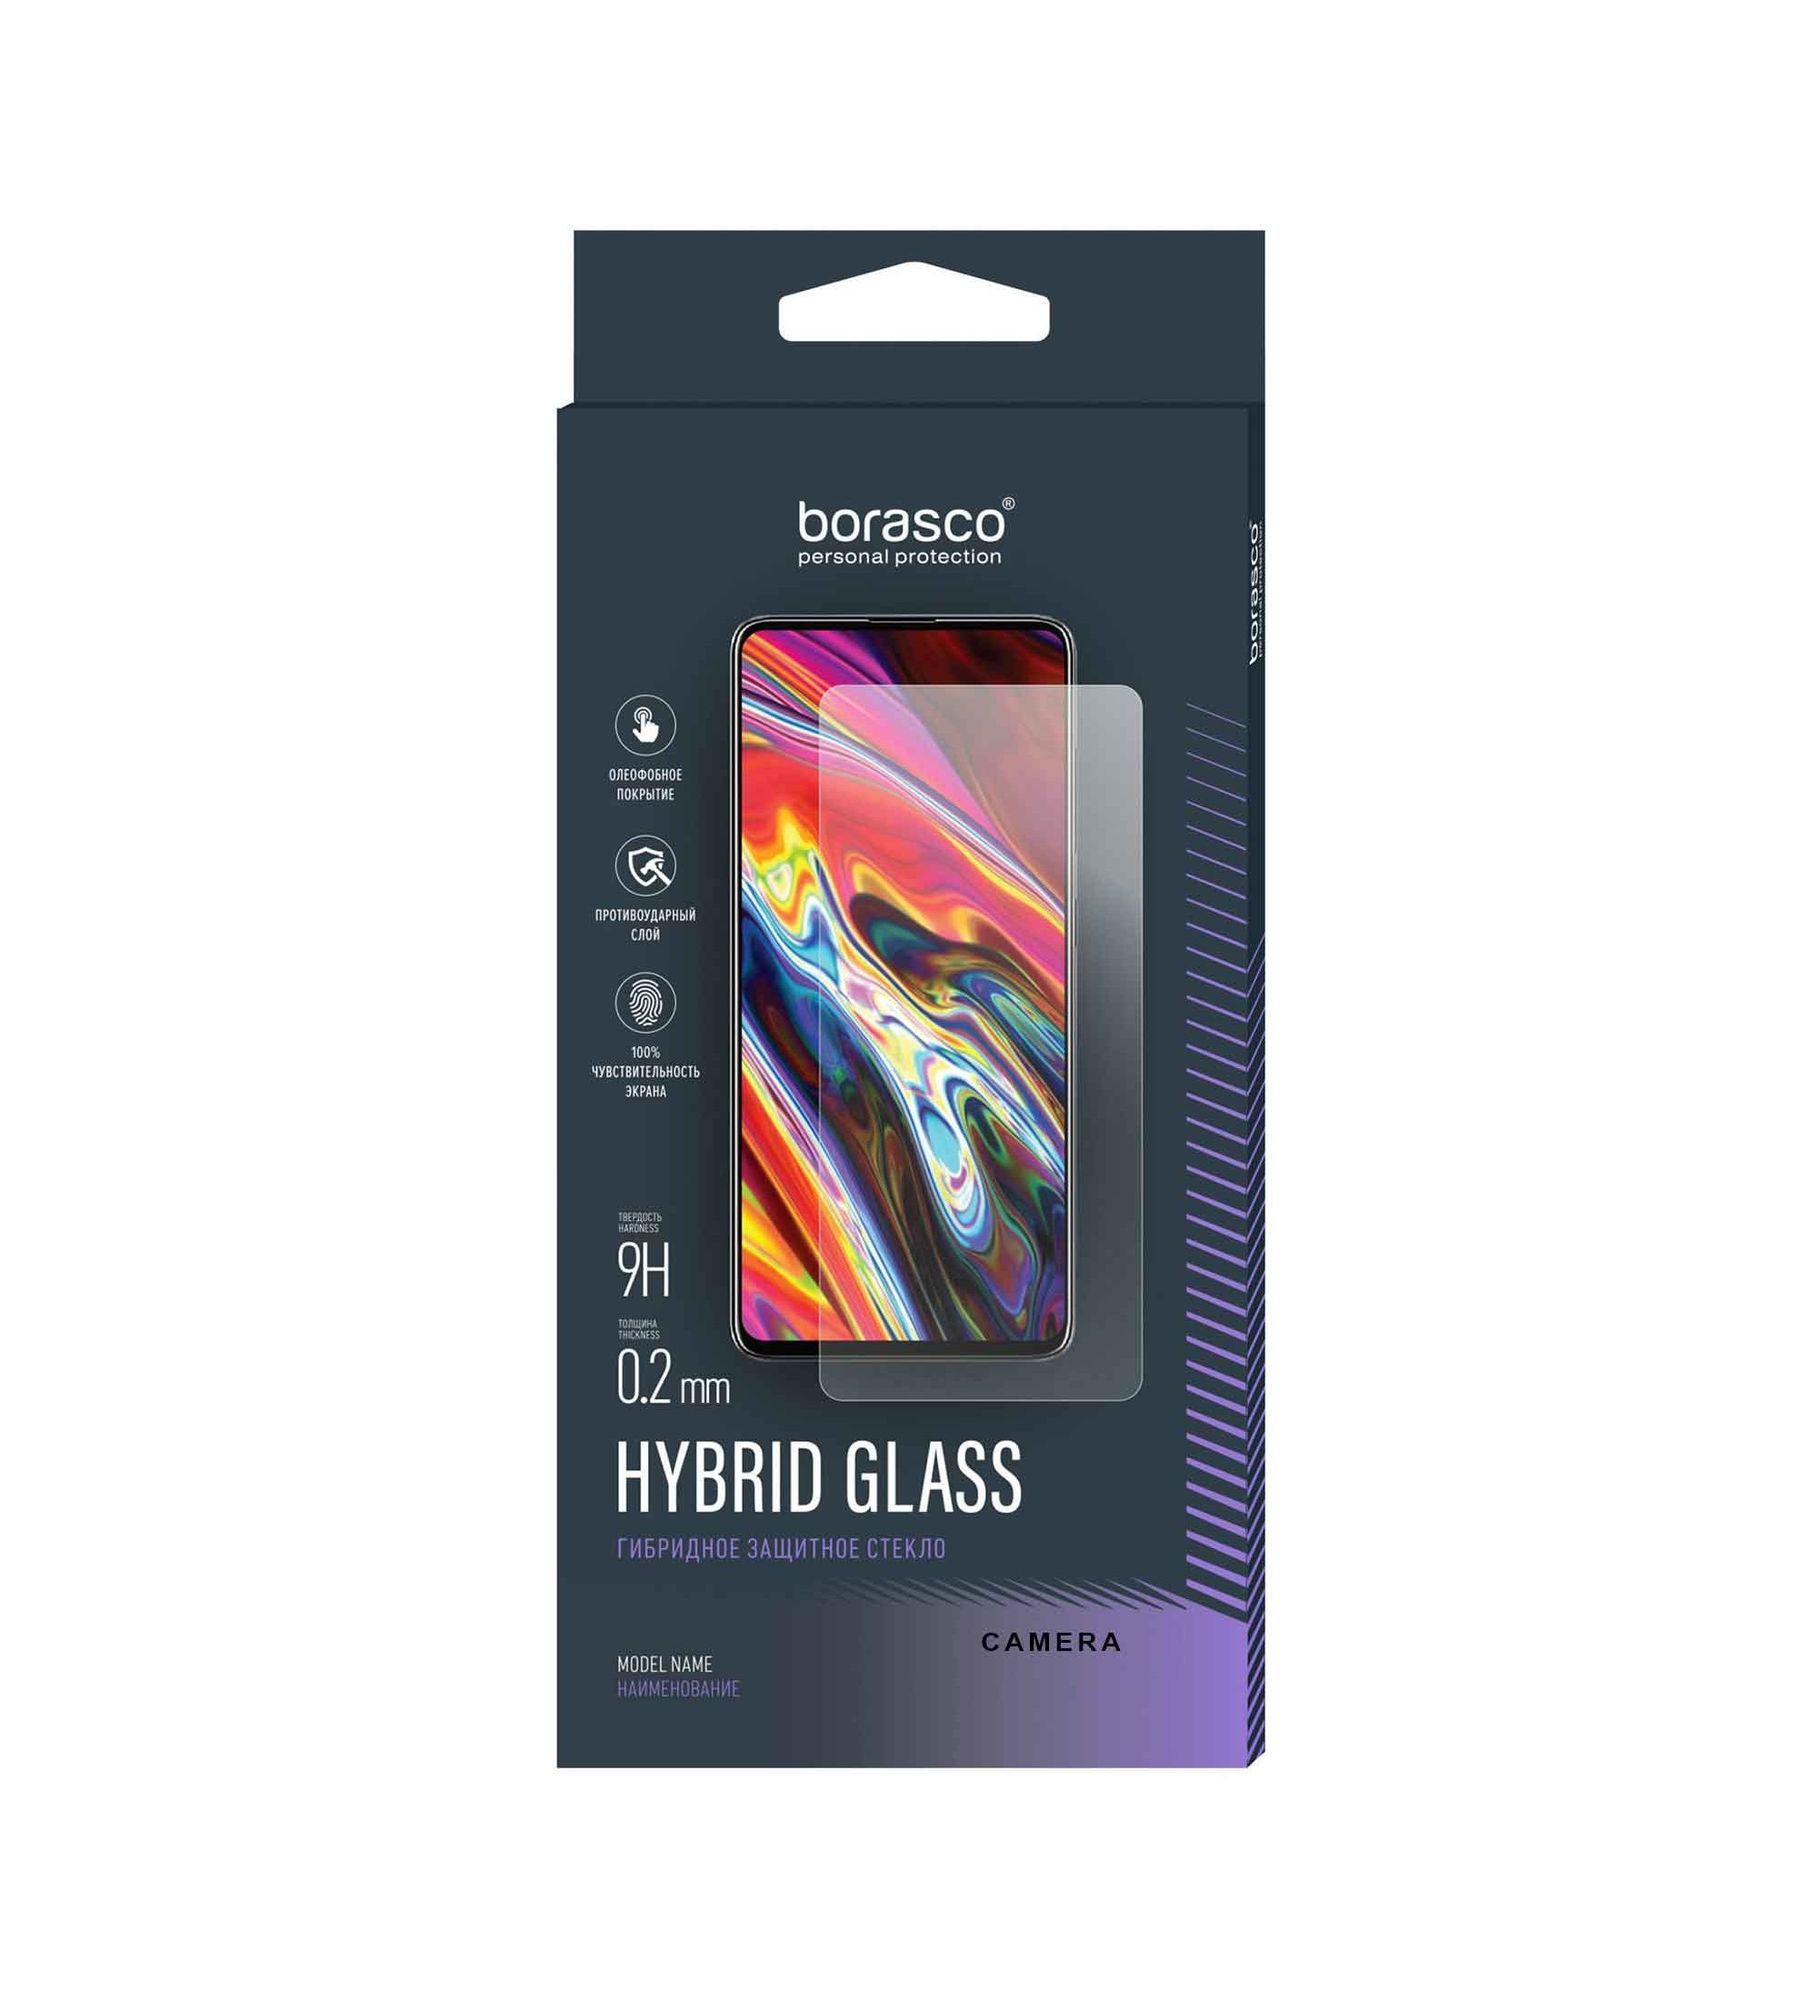 Защитное стекло BoraSCO Hybrid Glass для Samsung Galaxy A33 стекло с полным покрытием для samsung galaxy a33 стекло для samsung a33 закаленное стекло защита экрана для samsung a 33 a33 искусственное стекло для объектива